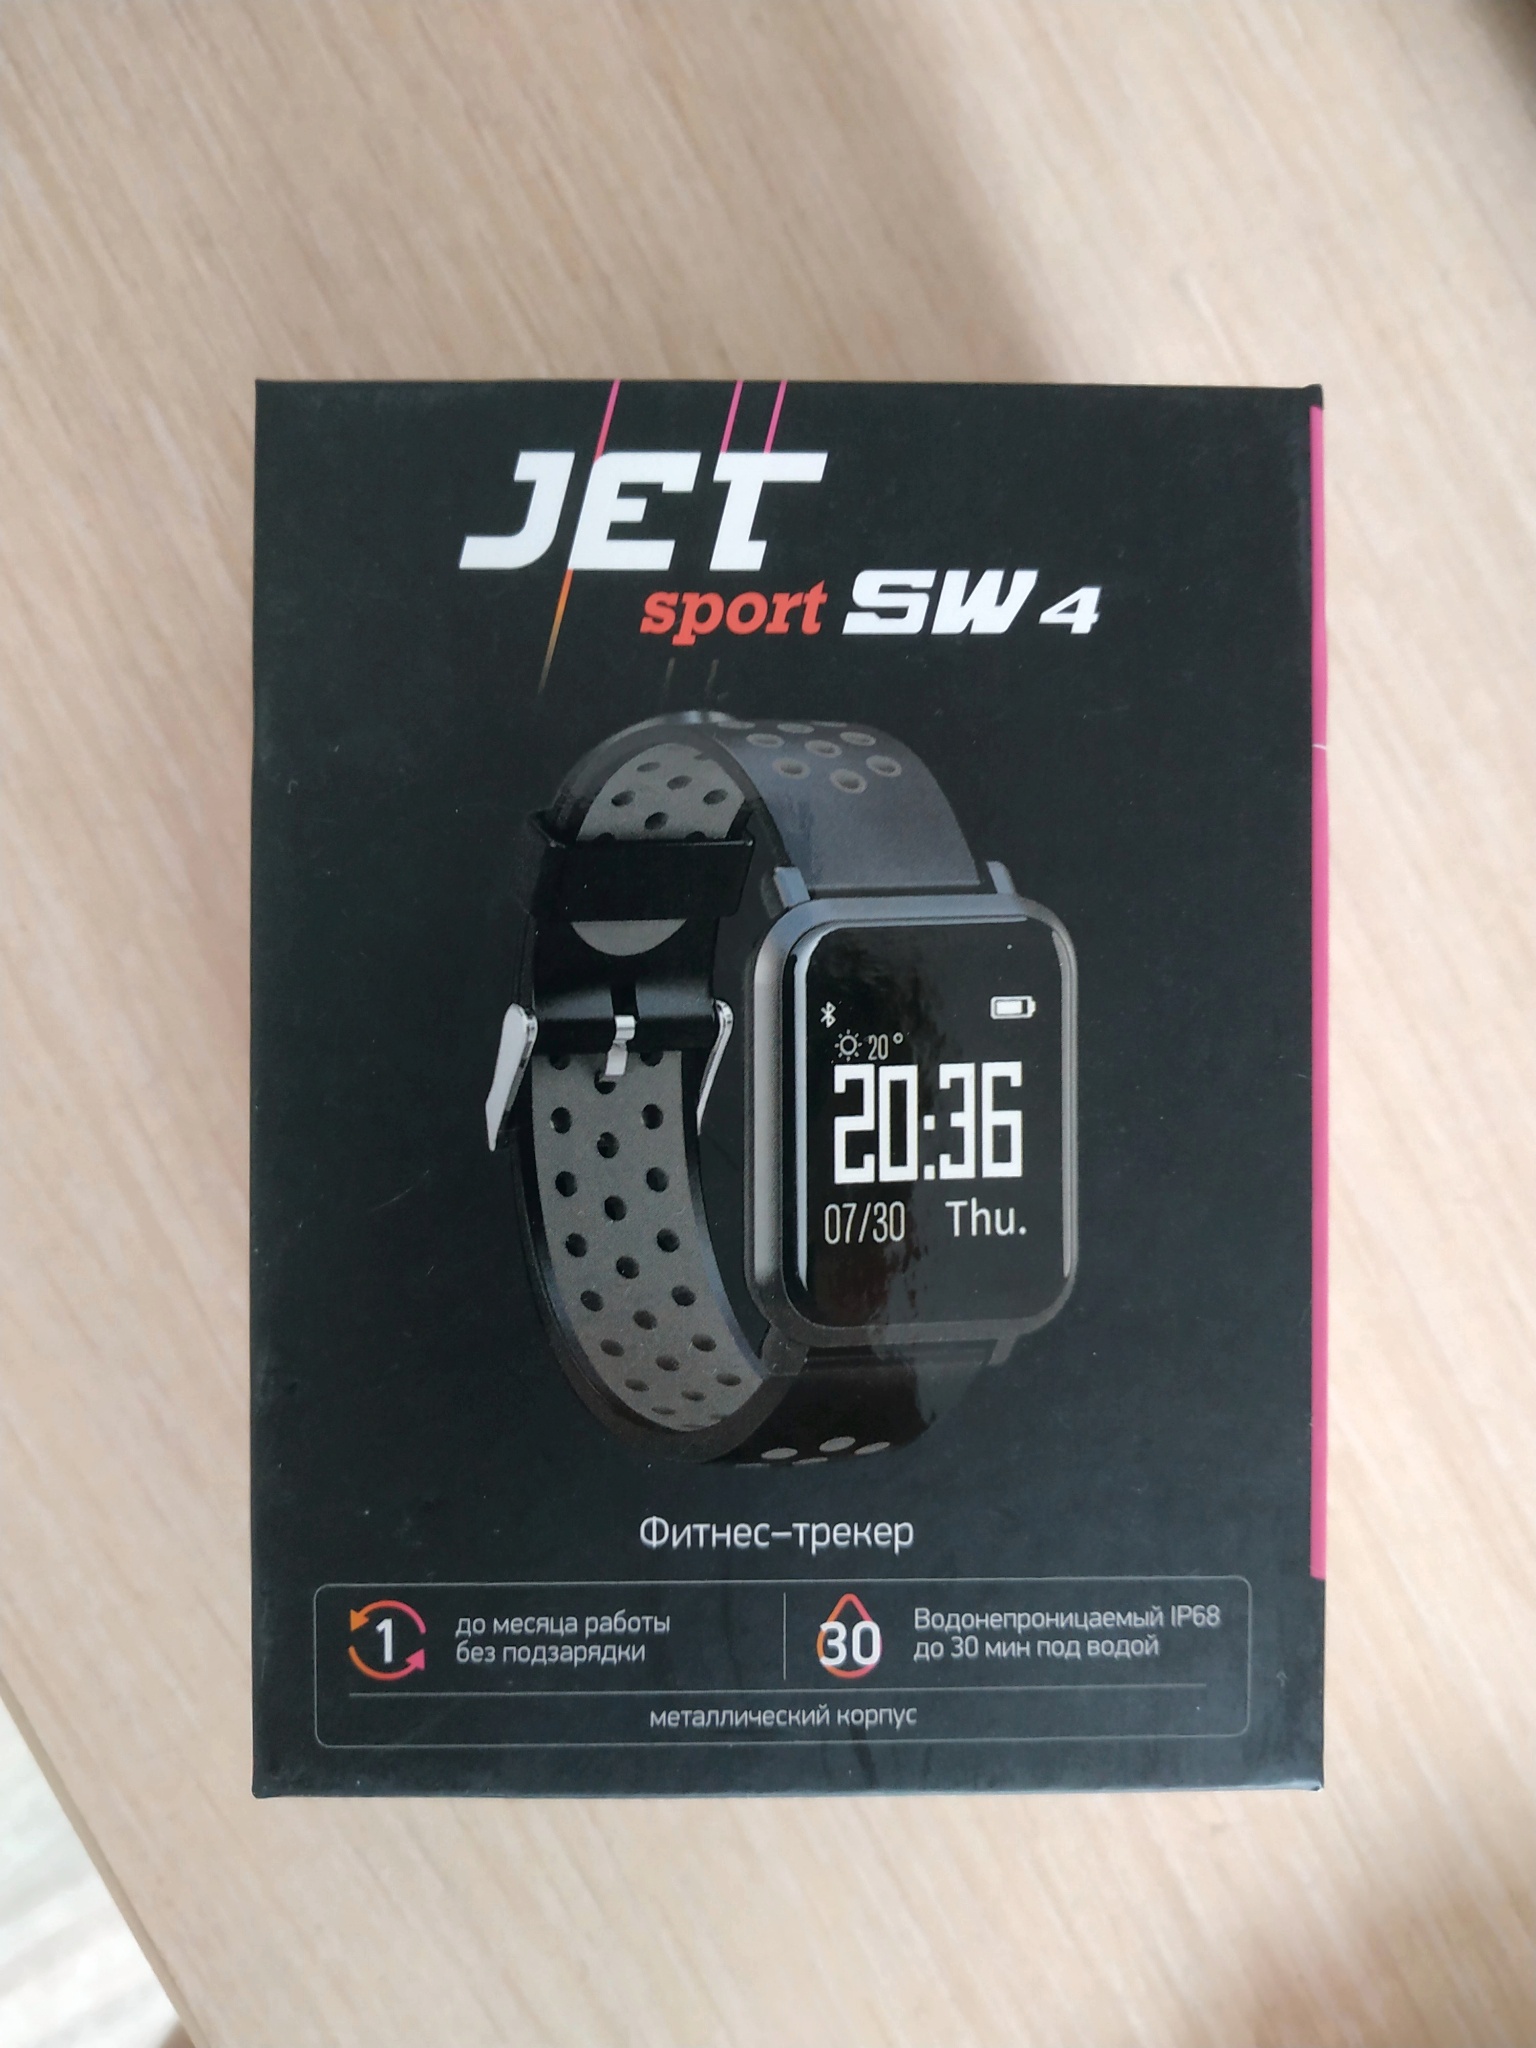 Часы jet sport sw 4c. Часы Джет спорт sw4. Jet Sport SW-4c. Часы Jet Sport SW-4.